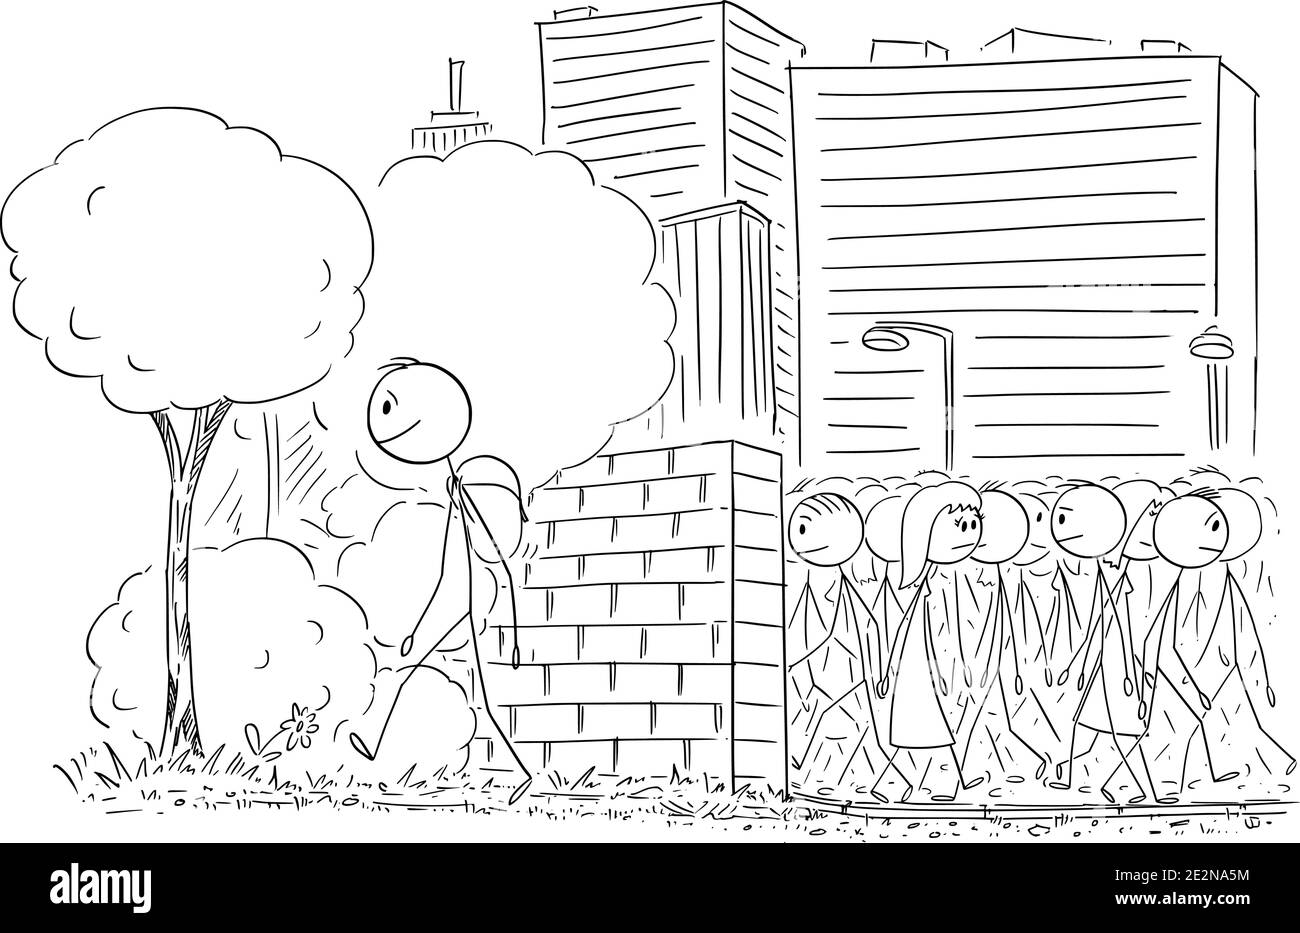 Immagine vettoriale del cartoon stick illustrazione dell'uomo che lascia la grande città con la folla e a piedi in viaggio nella natura. Illustrazione Vettoriale